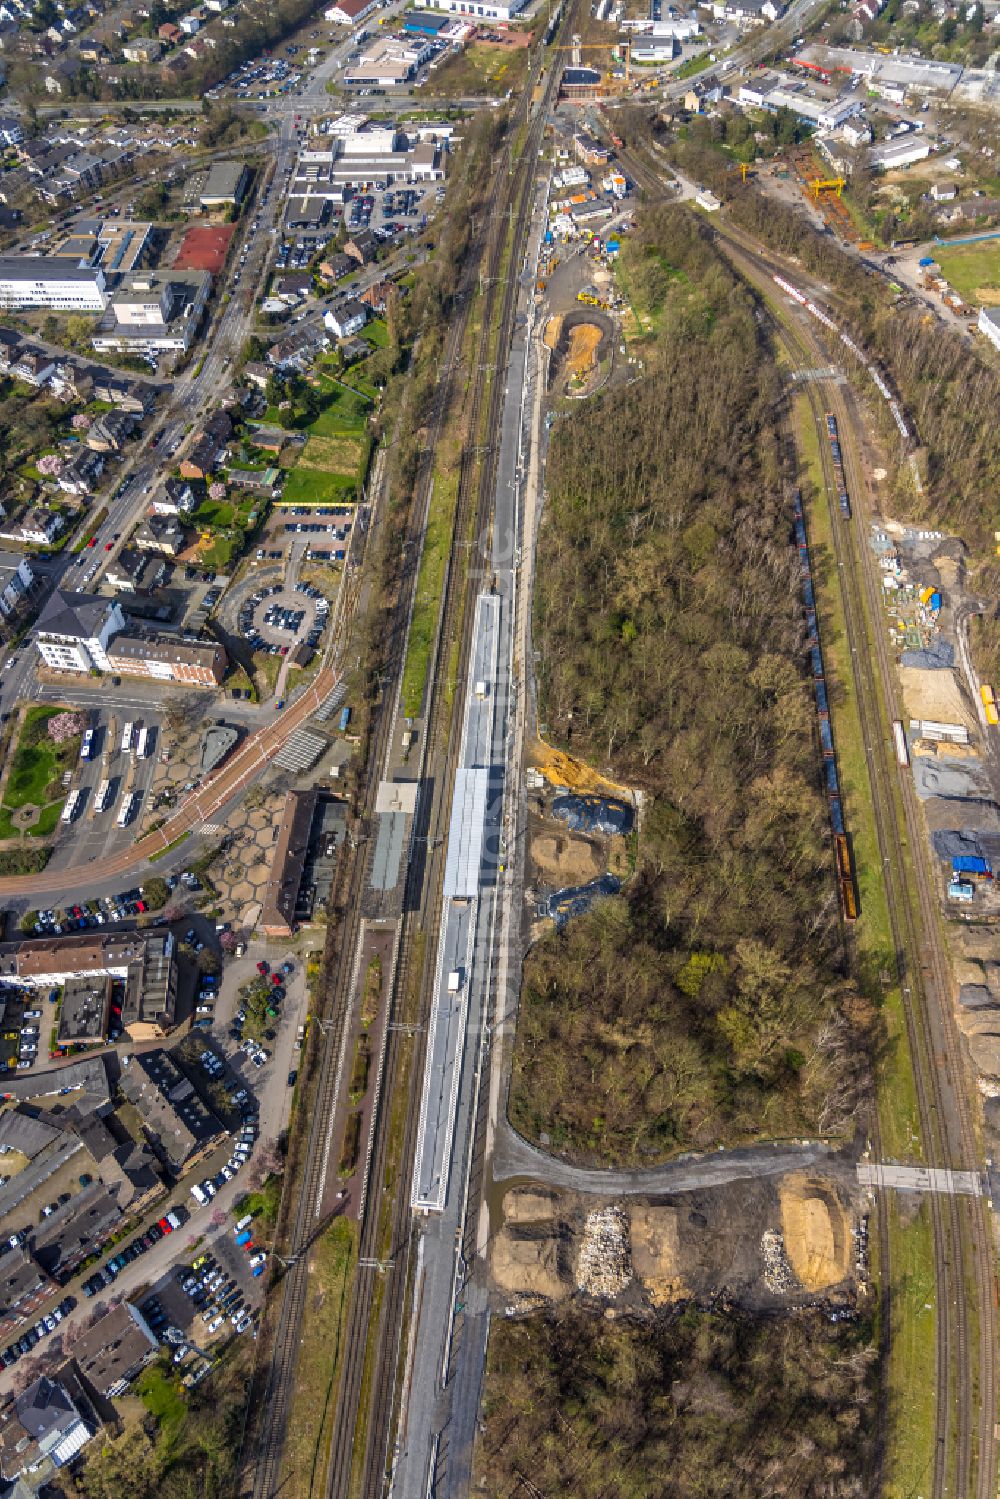 Luftbild Dinslaken - Gleisverlauf und Bahnhofsgebäude mit Tunnelarbeiten in Dinslaken im Bundesland Nordrhein-Westfalen, Deutschland